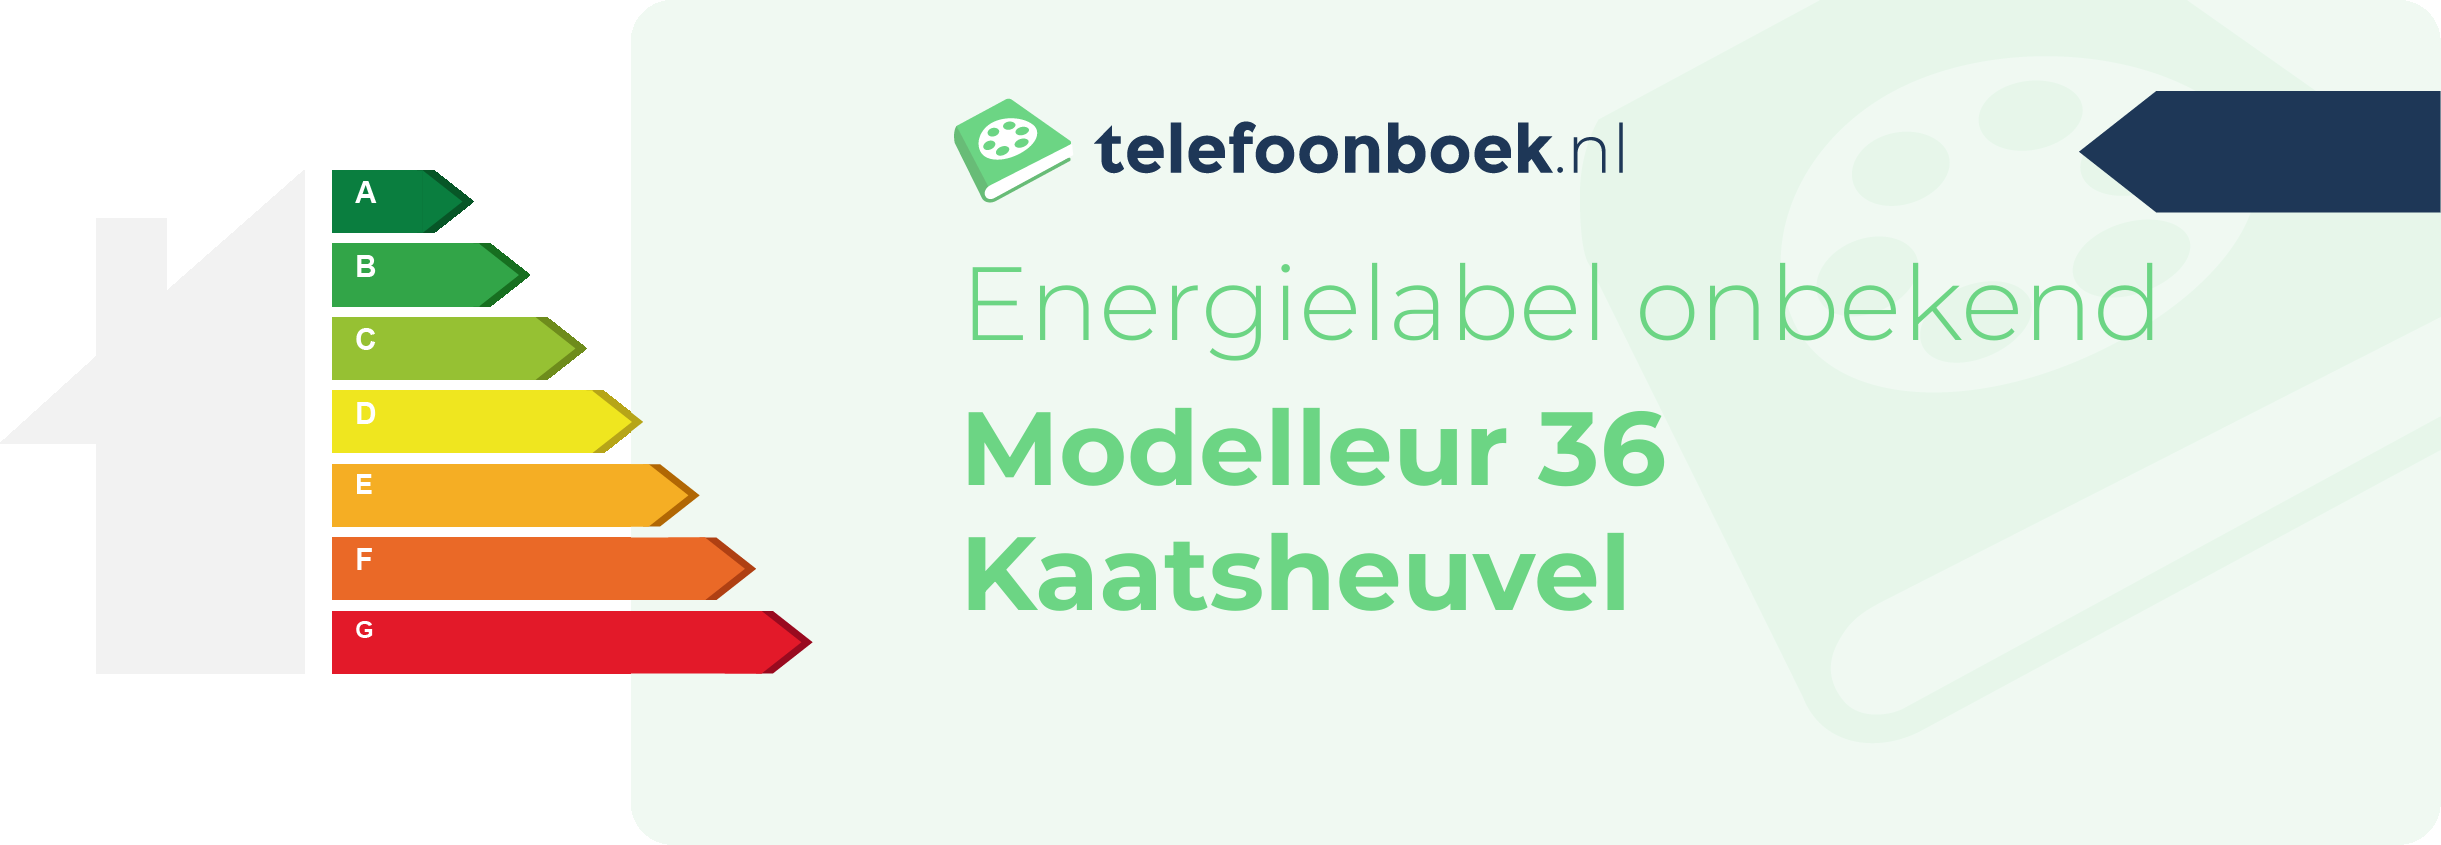 Energielabel Modelleur 36 Kaatsheuvel